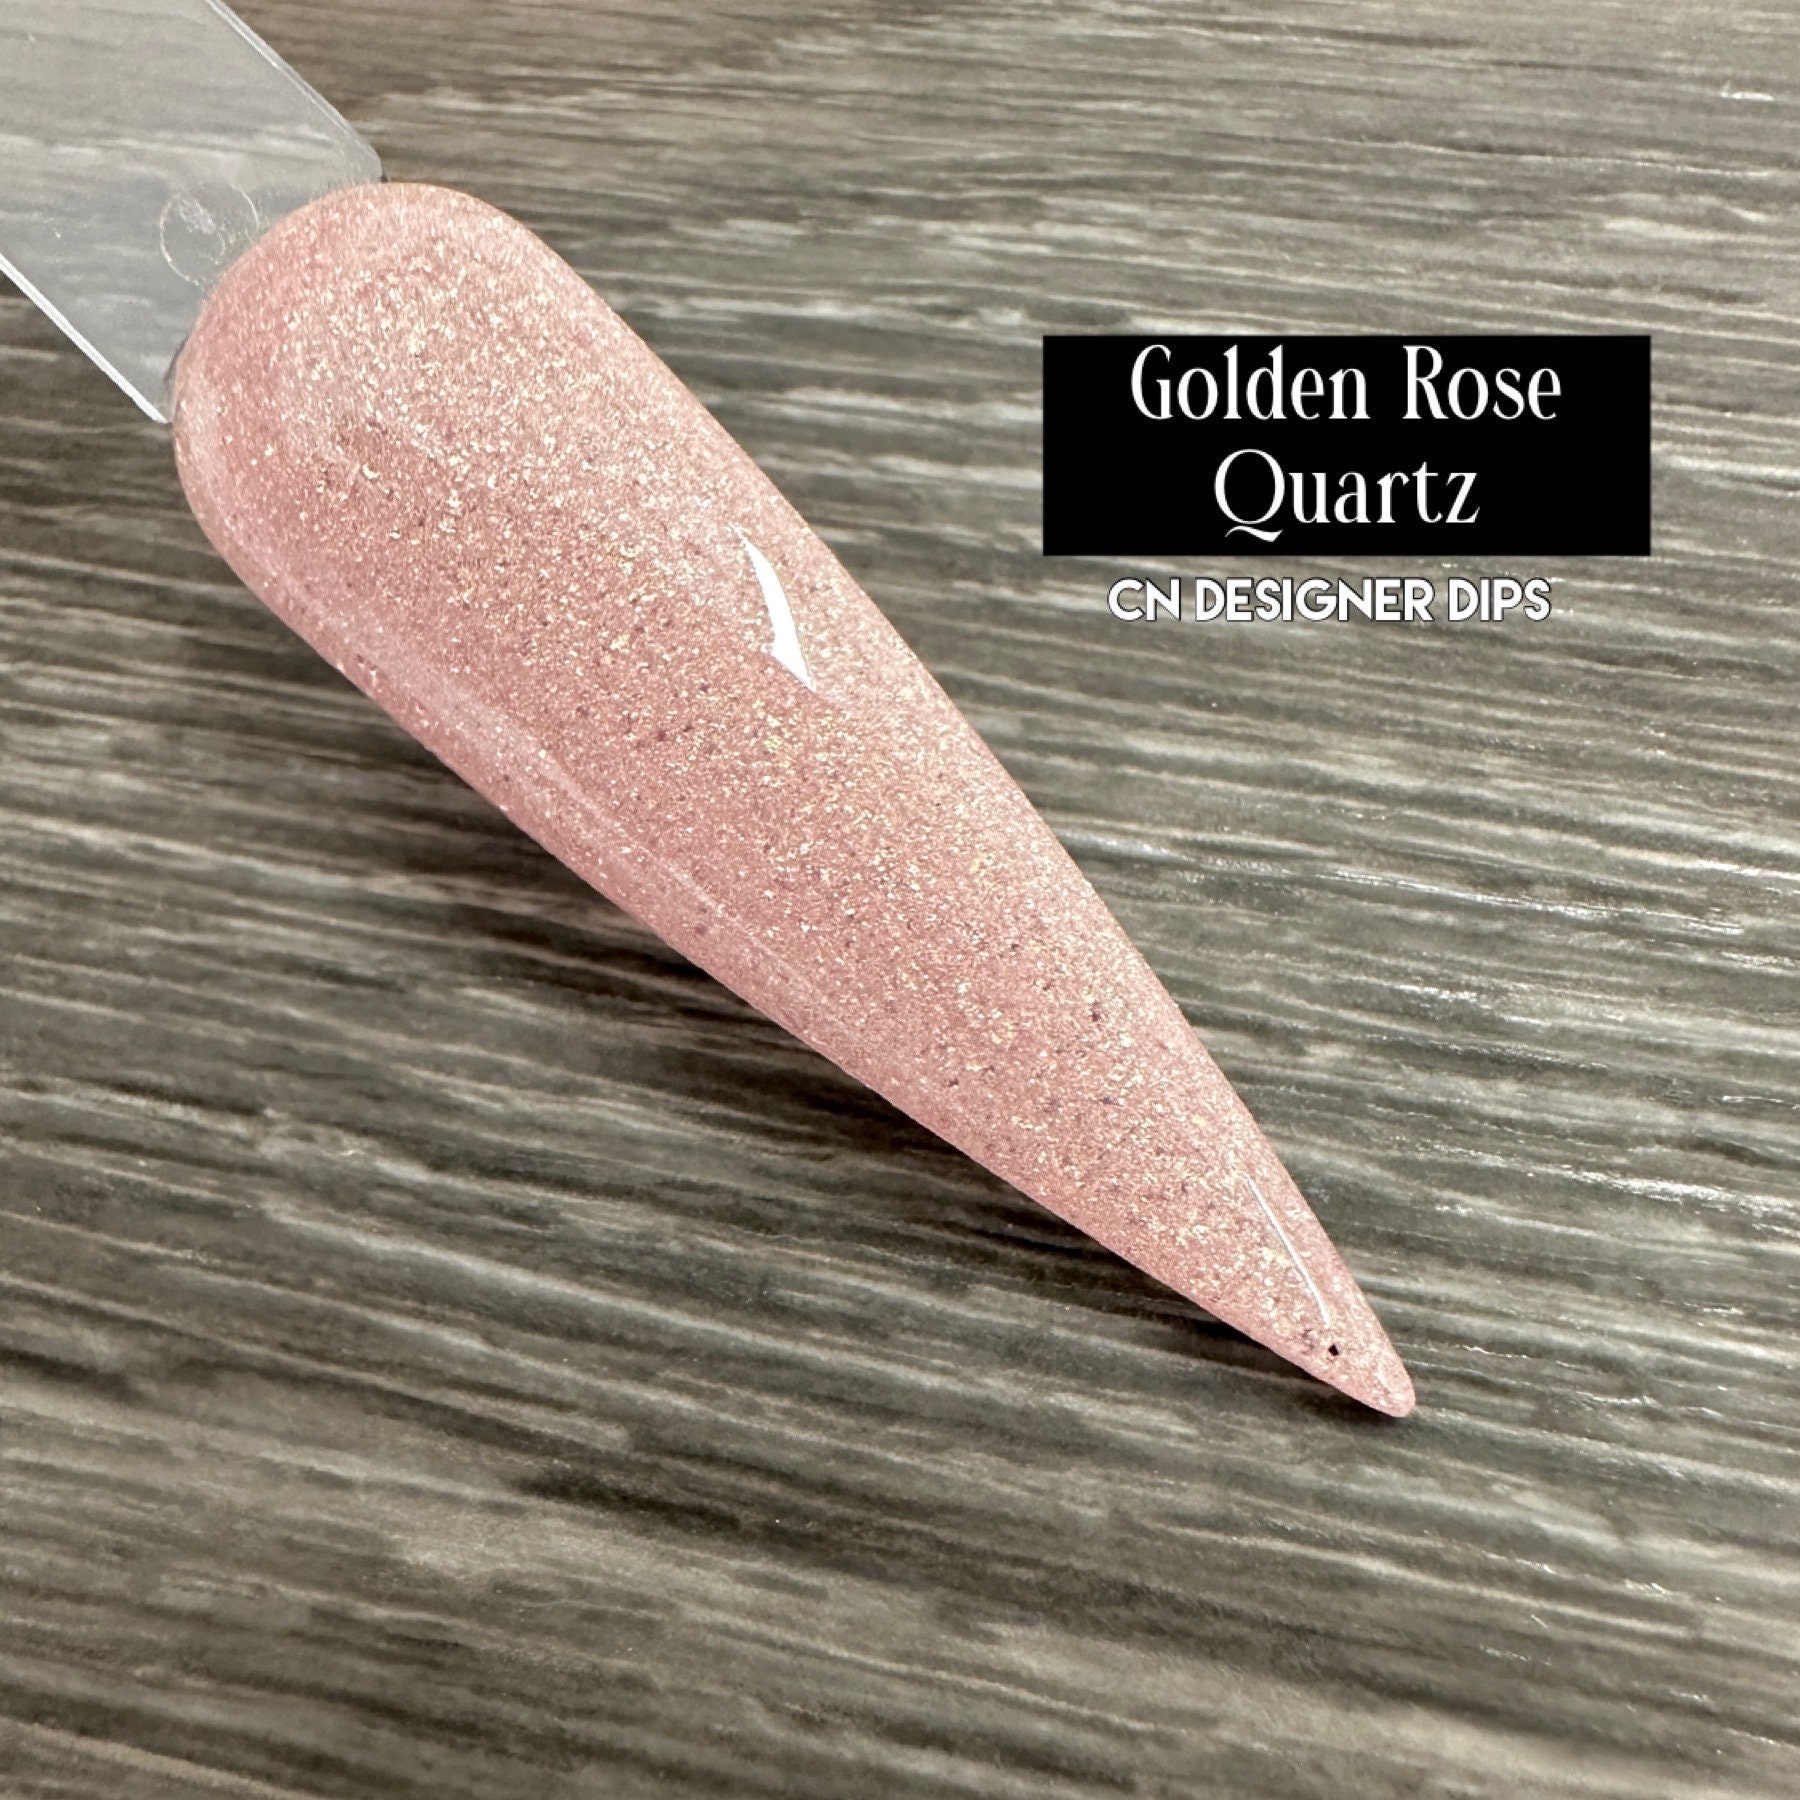 Golden Rose Quartz - Tauchpulver, Tauchpulver Für Nägel, Nagel Dip, Dip Nagel, Pulver, Acryl von Etsy - CNDesignerDips